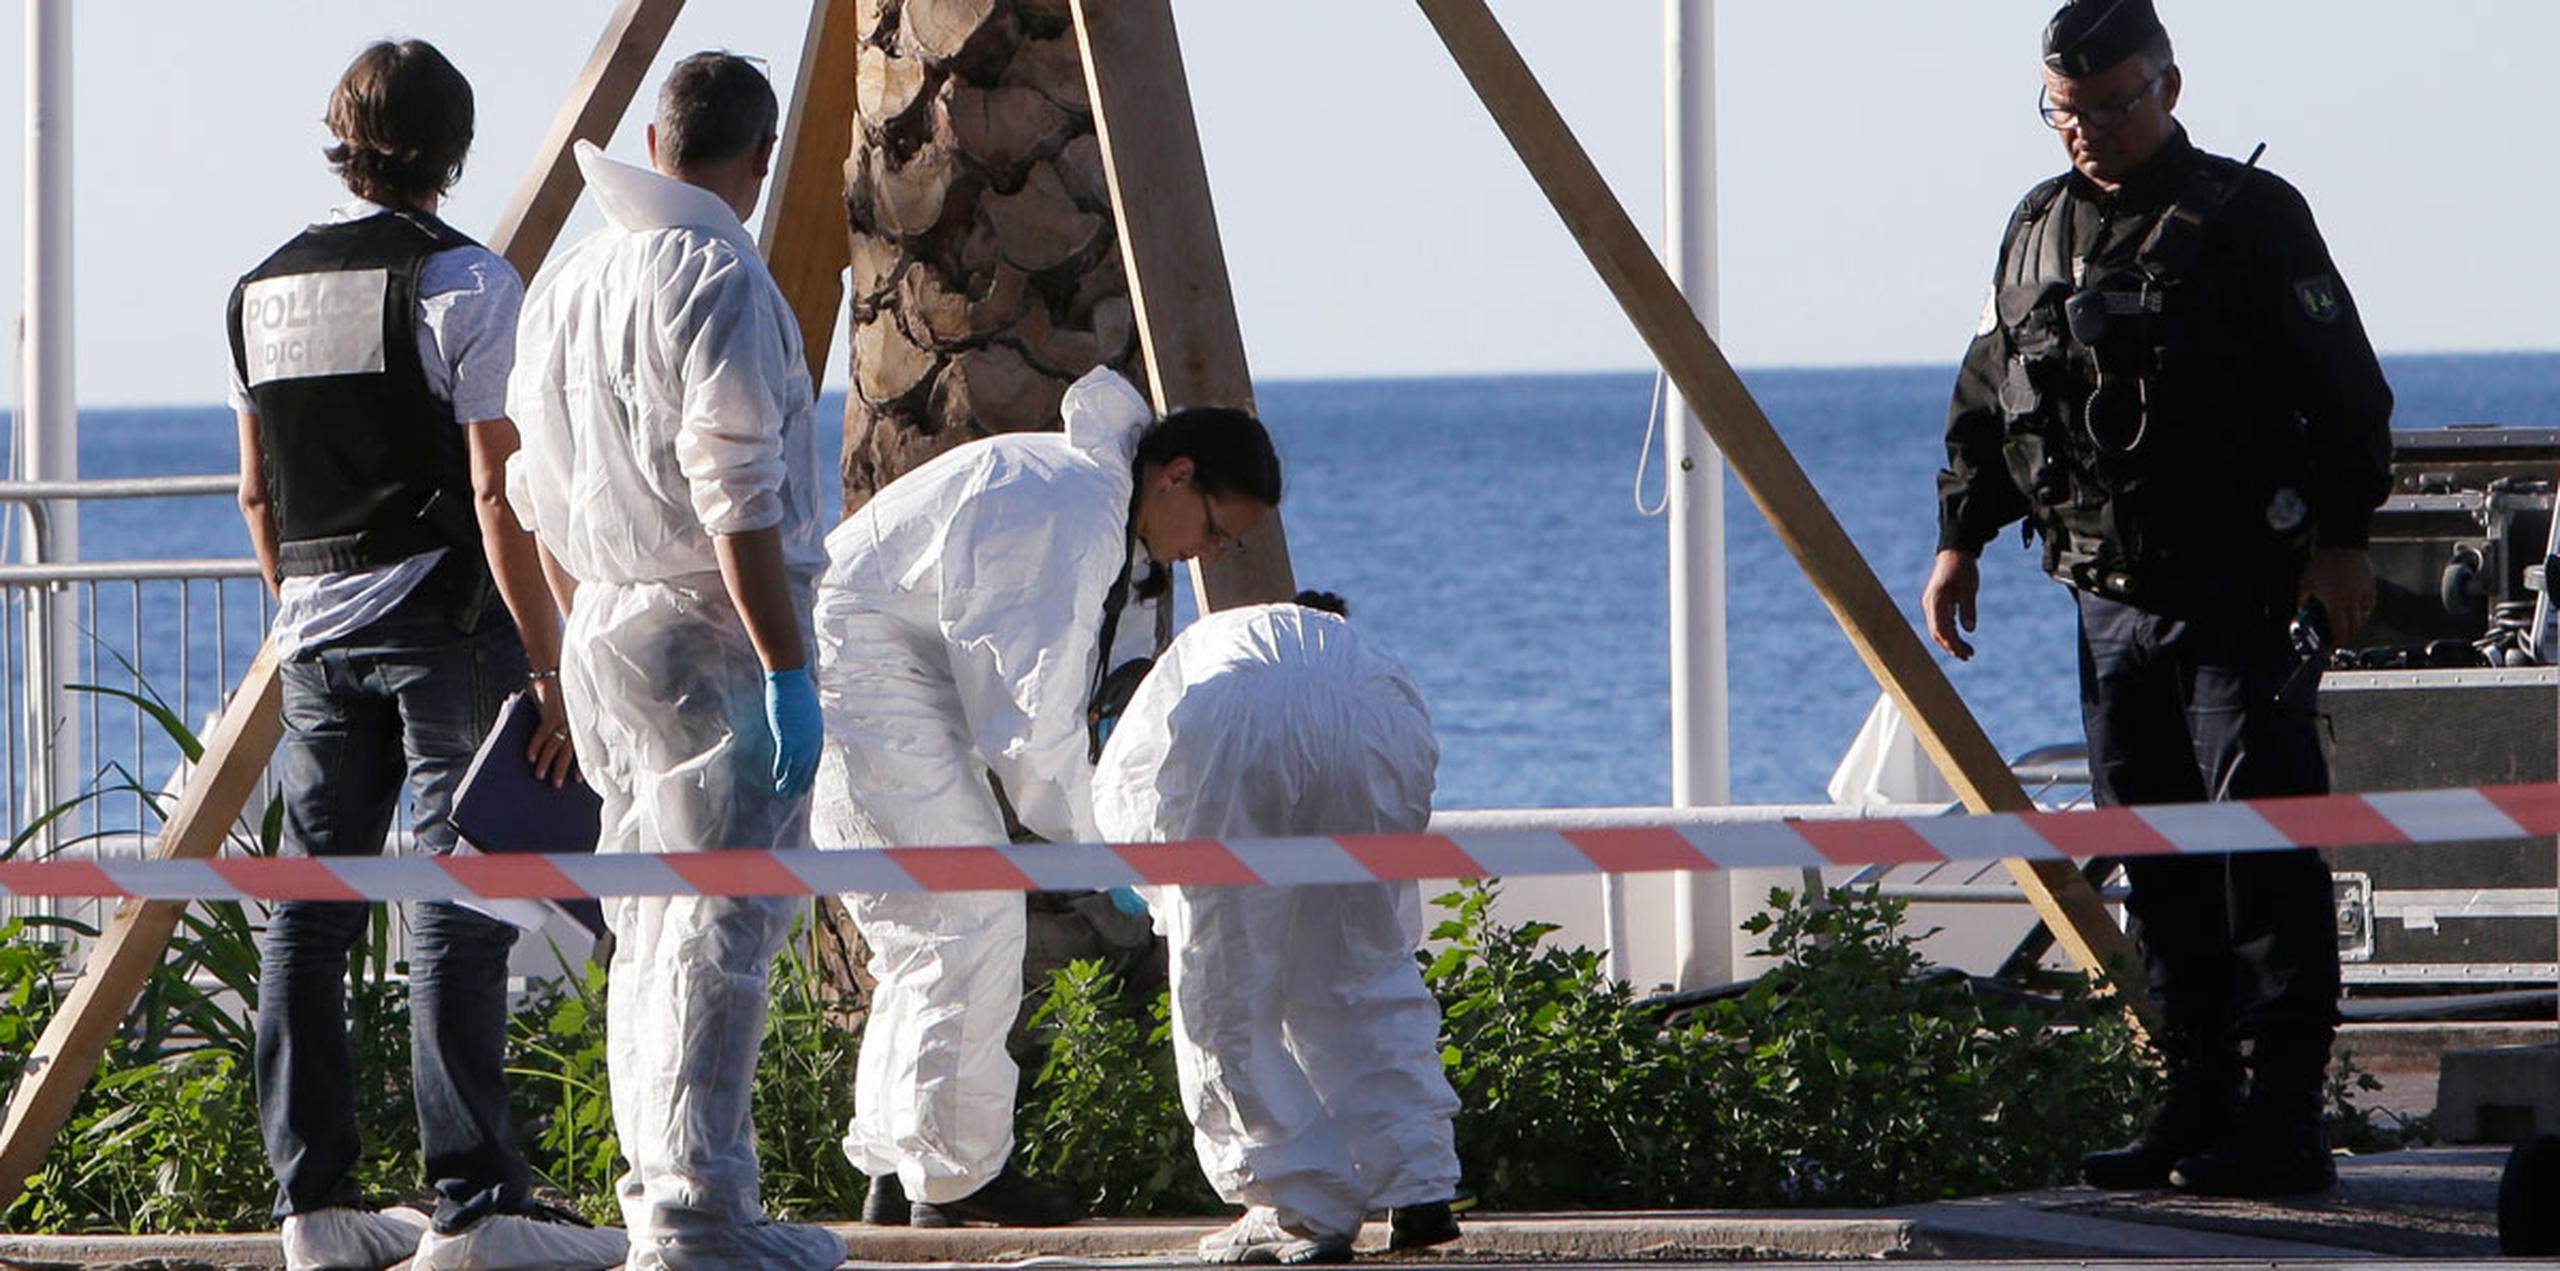 Investigadores inspeccionan la escena donde ayer el conductor de un camión atropelló intencionalmente a decenas de personas en la costa de Niza. (AP)